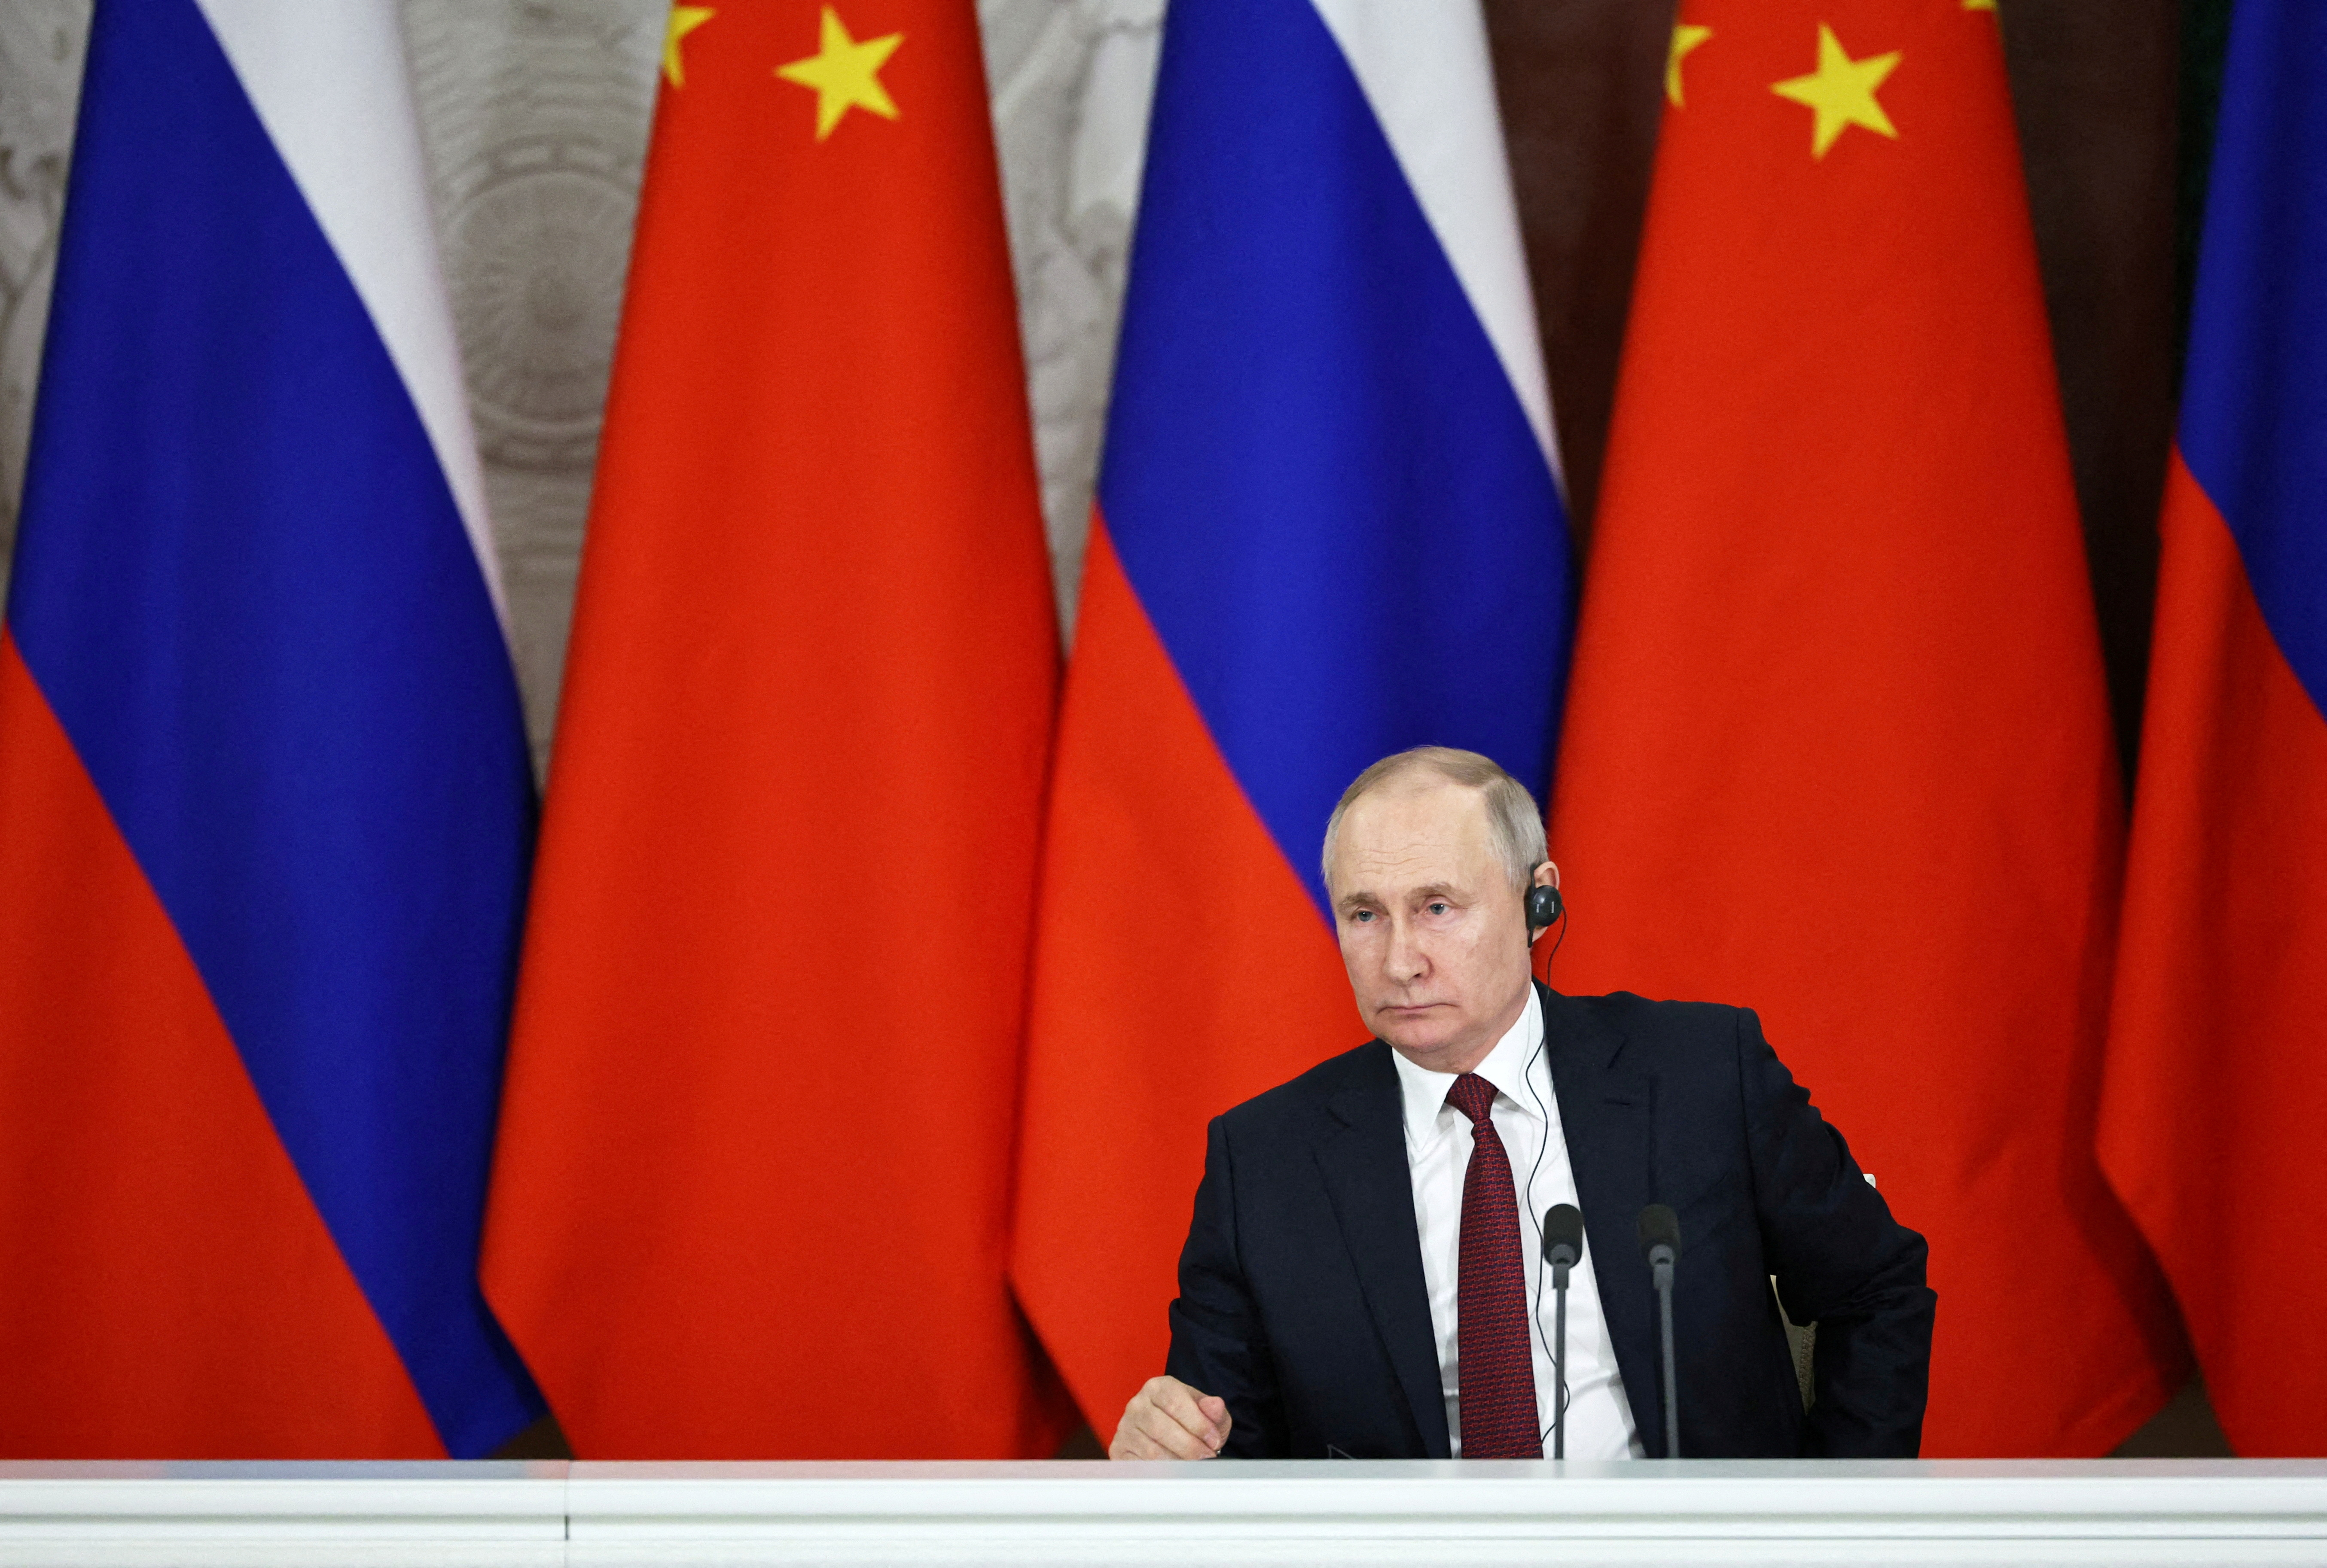 El líder del Kremlin invirtió un esfuerzo considerable para demostrar que Rusia podría ser un socio valioso para China, pero, 18 meses después de la invasión, “esa asociación bidireccional parece cada vez más unilateral” (Sputnik/Mikhail Tereshchenko/Pool via REUTERS)